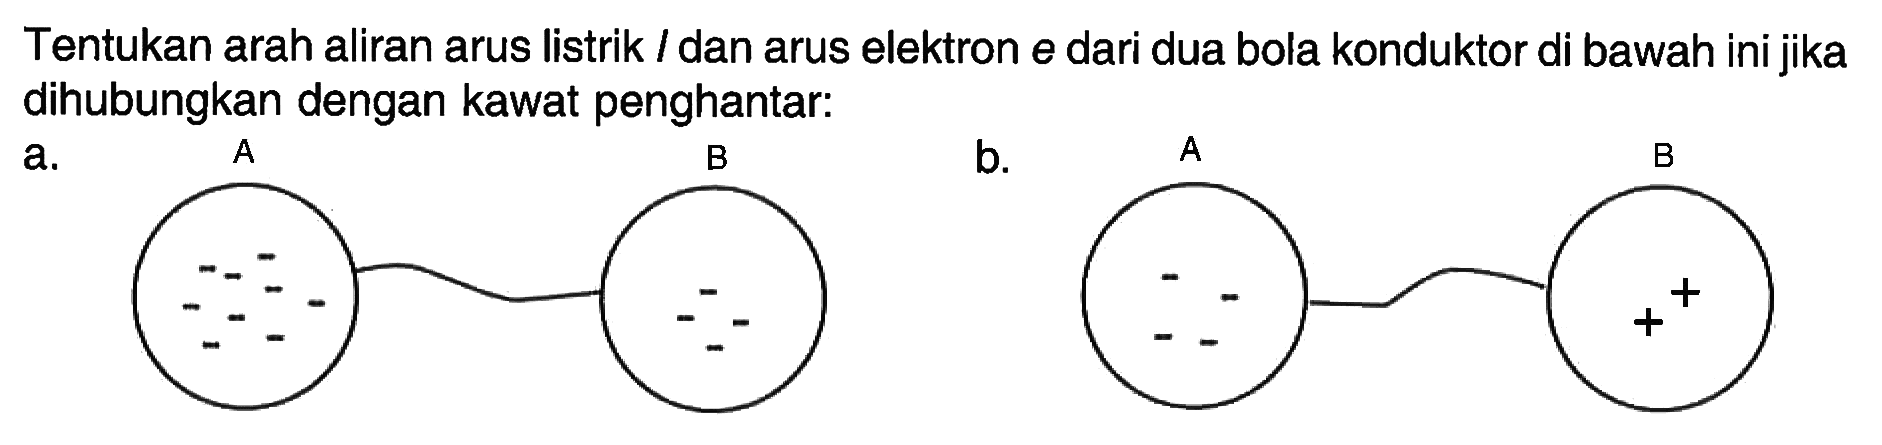 Tentukan arah aliran arus listrik l dan arus elektron e dari dua bola konduktor di bawah ini jika dihubungkan dengan kawat penghantar. a. A B b. A B